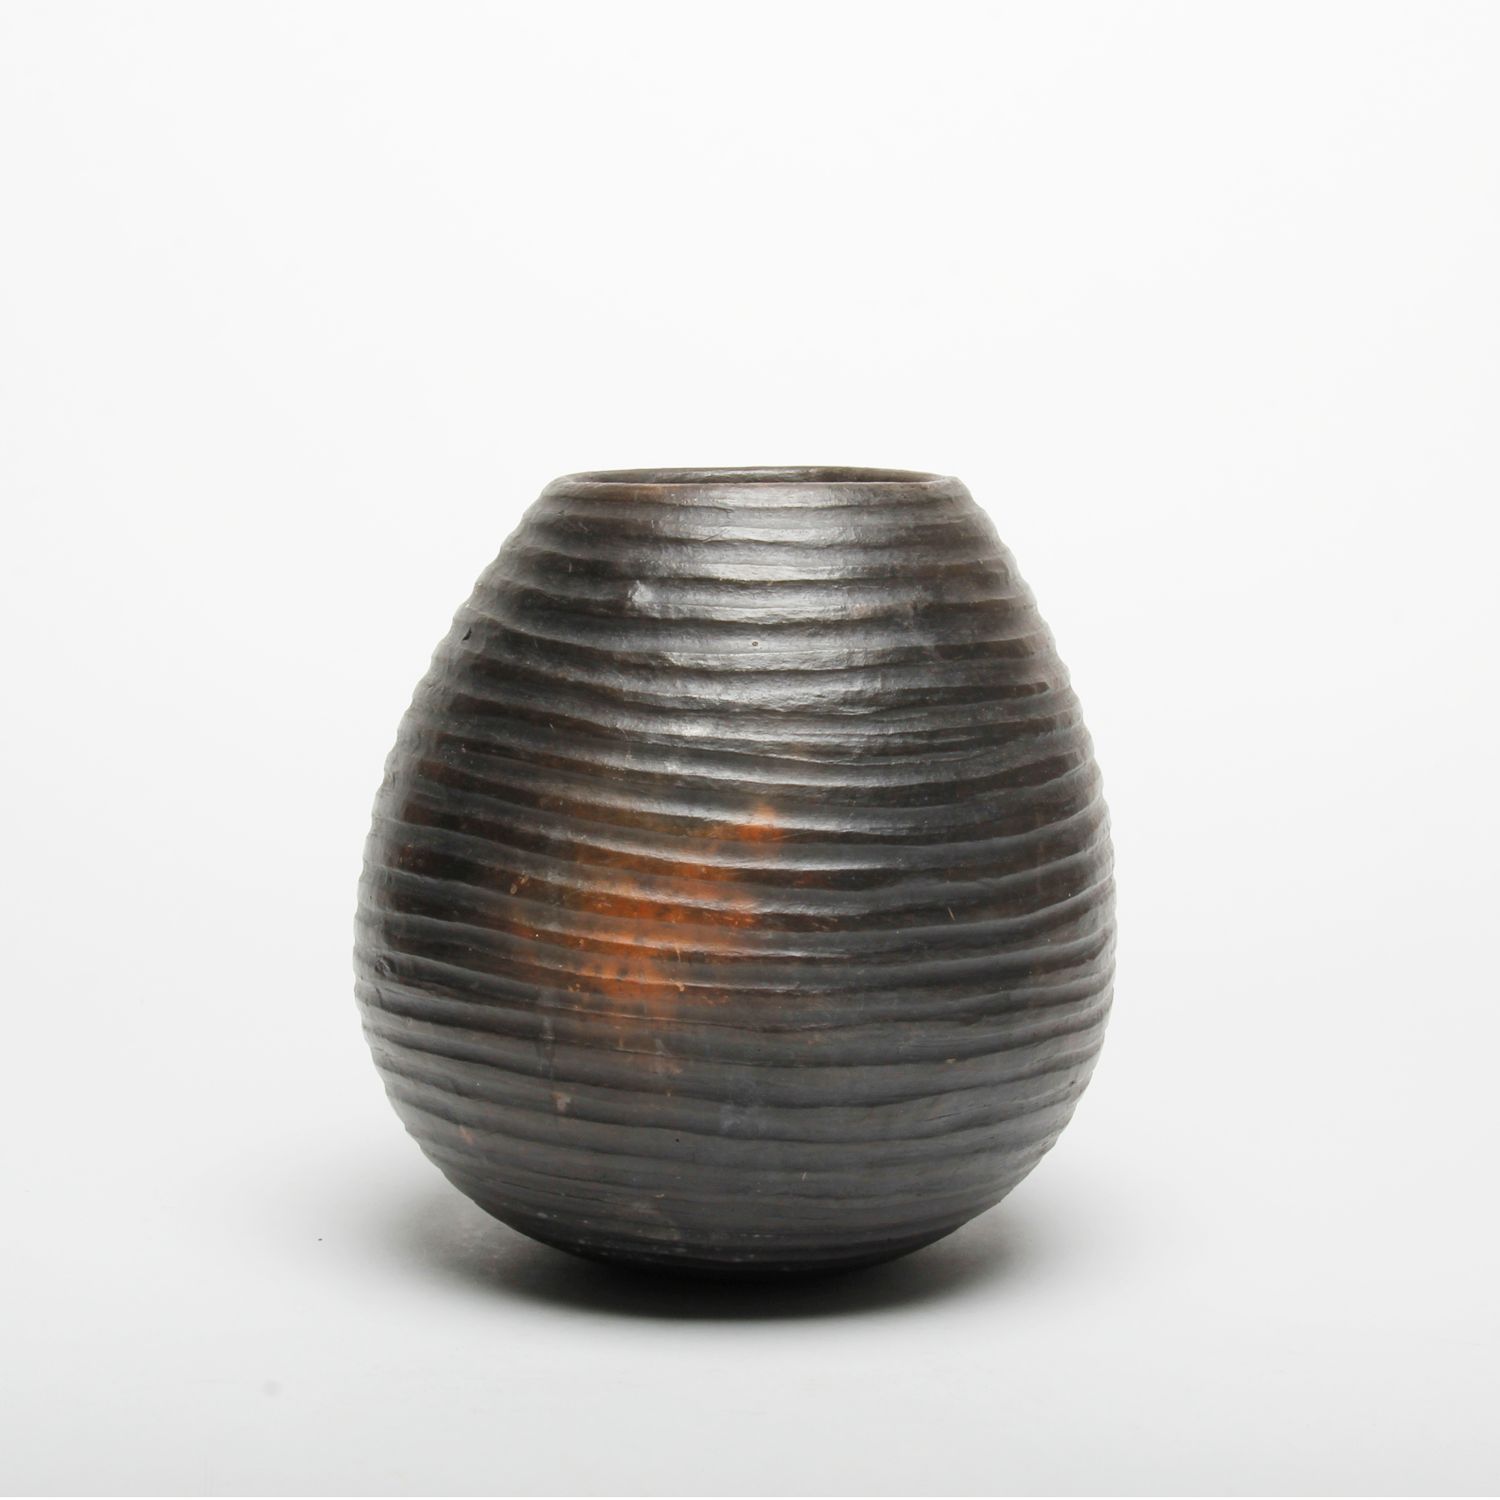 AfriCharisma: Small Multi-Ring Vase Product Image 1 of 2